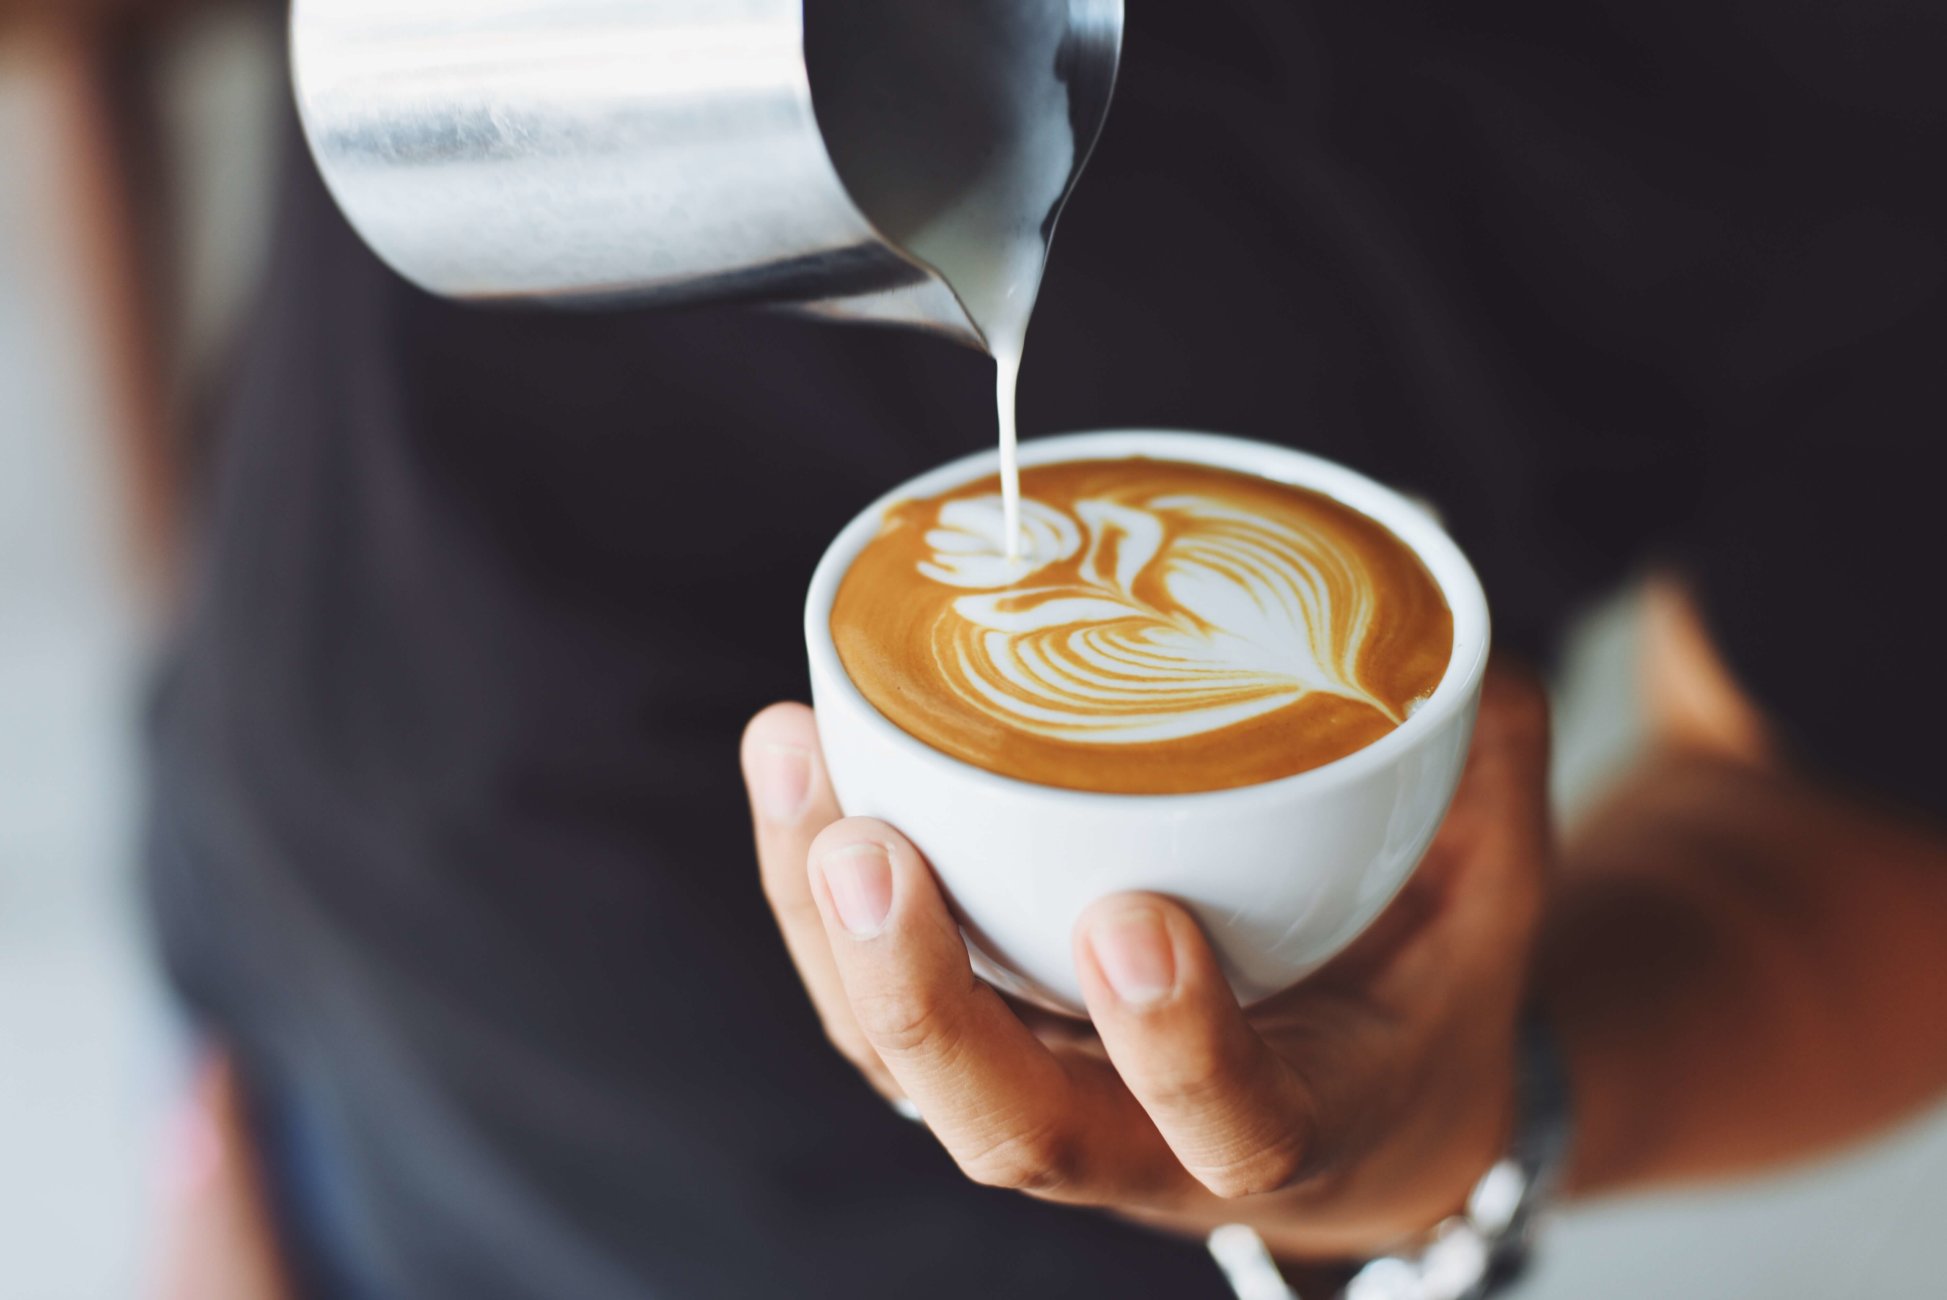 El latte art, el arte de diseñar con café